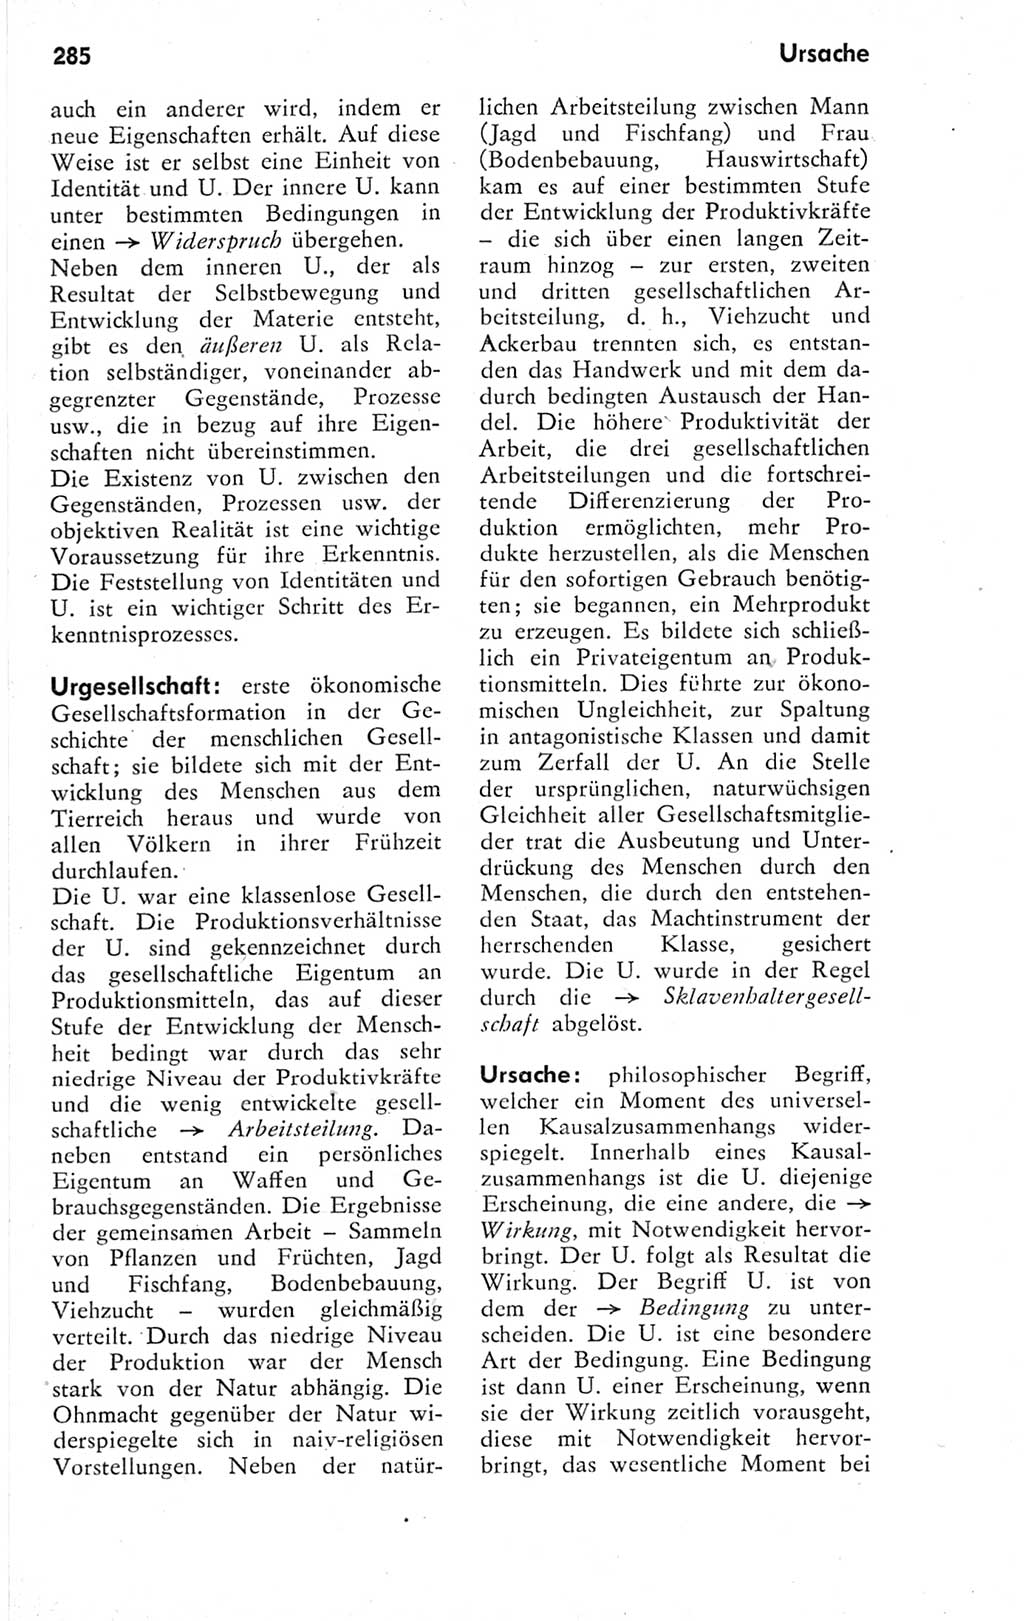 Kleines Wörterbuch der marxistisch-leninistischen Philosophie [Deutsche Demokratische Republik (DDR)] 1974, Seite 285 (Kl. Wb. ML Phil. DDR 1974, S. 285)